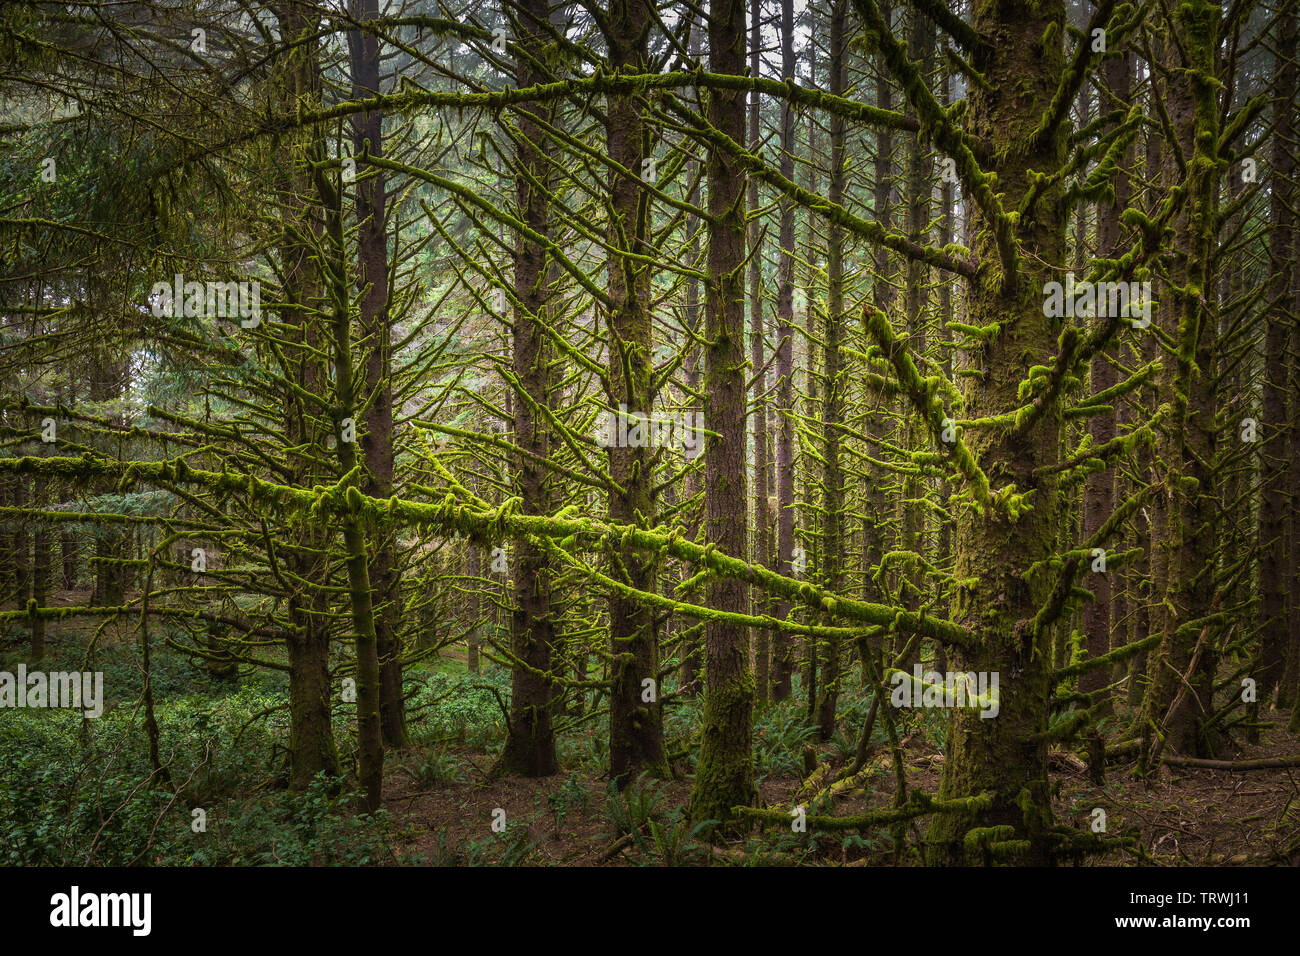 Los árboles en el Cabo Sebastian Estado Corredor escénico, un parque estatal en el estado norteamericano de Oregon, administrado por el Departamento de Parques y Recreación de Oregon. Foto de stock